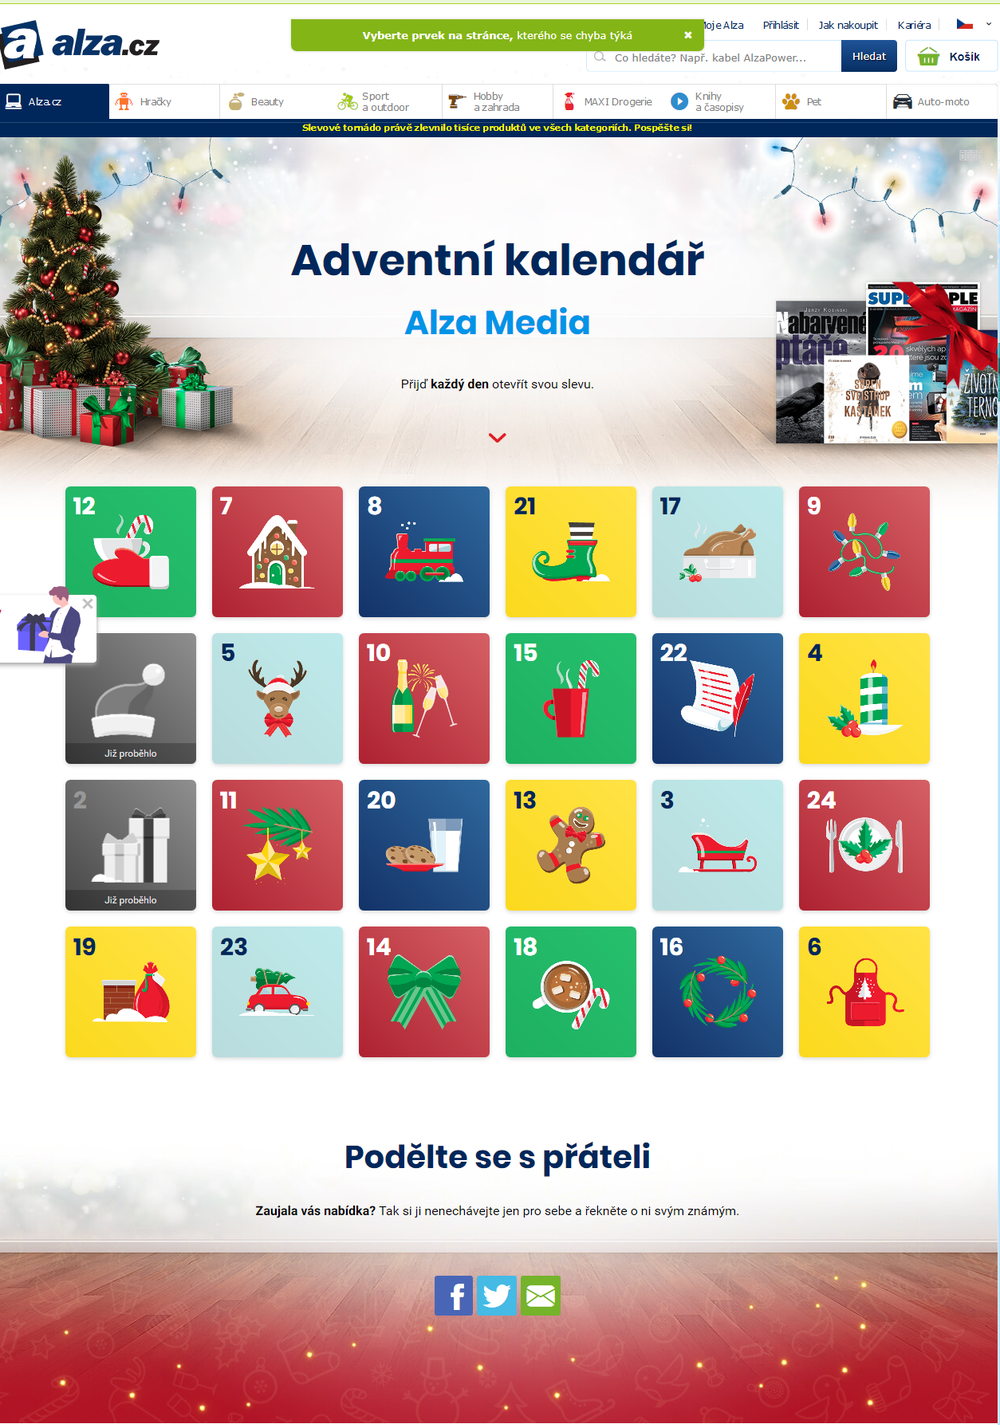 alza-2019-12-03-adventni-kalendar-knihy-1000px.png